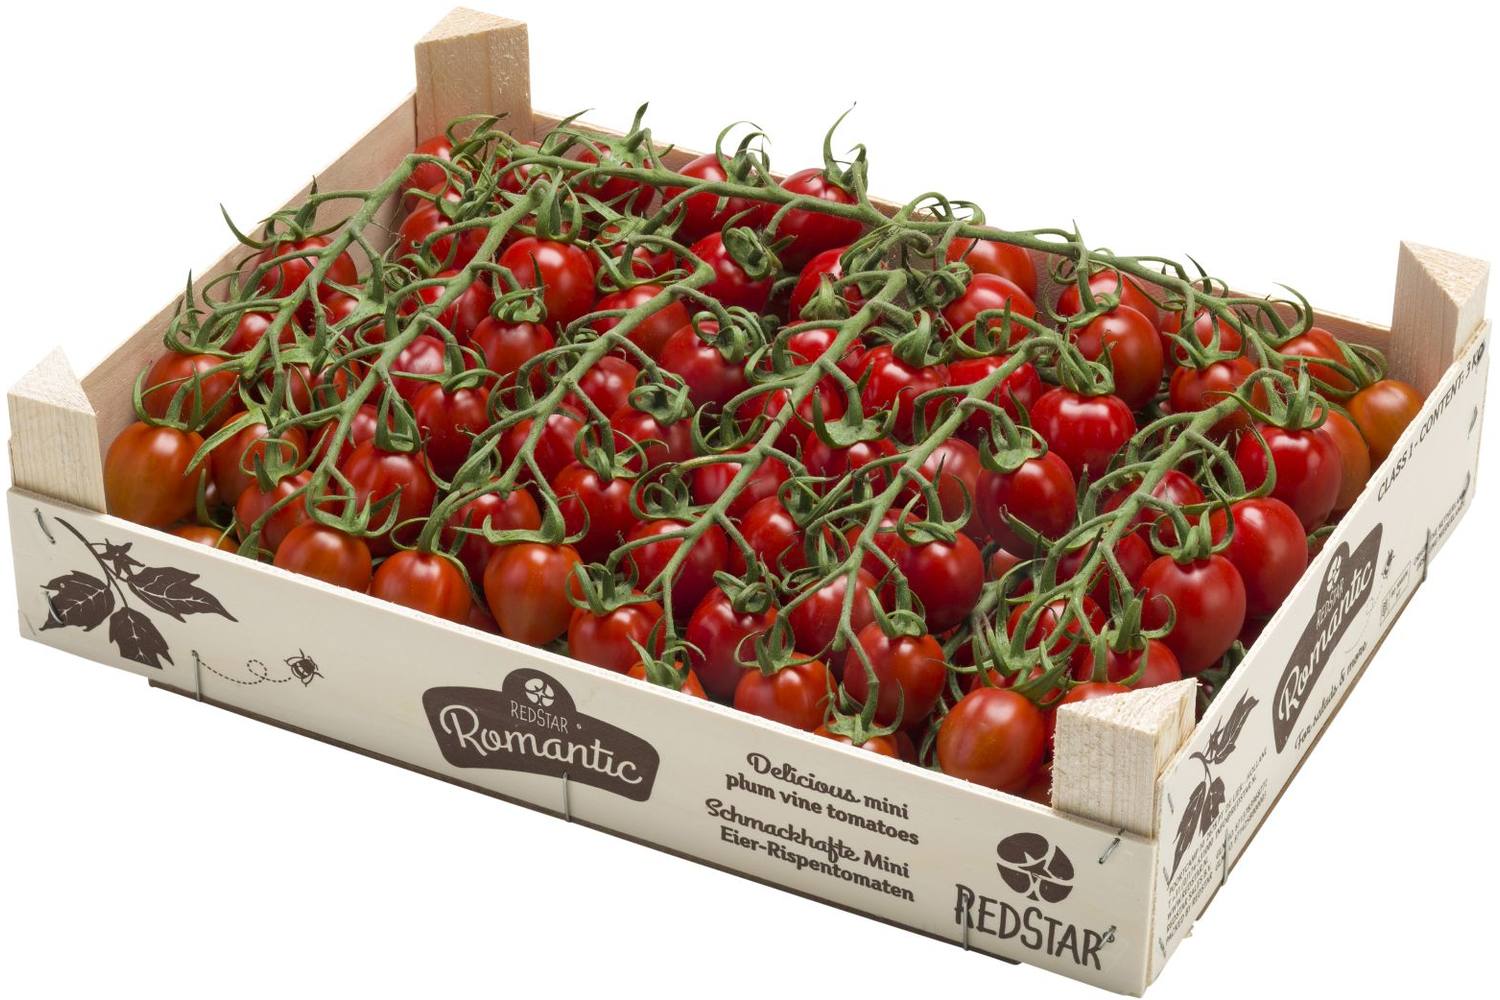 Tomato Red Star Romantic crade 3 kilo 1